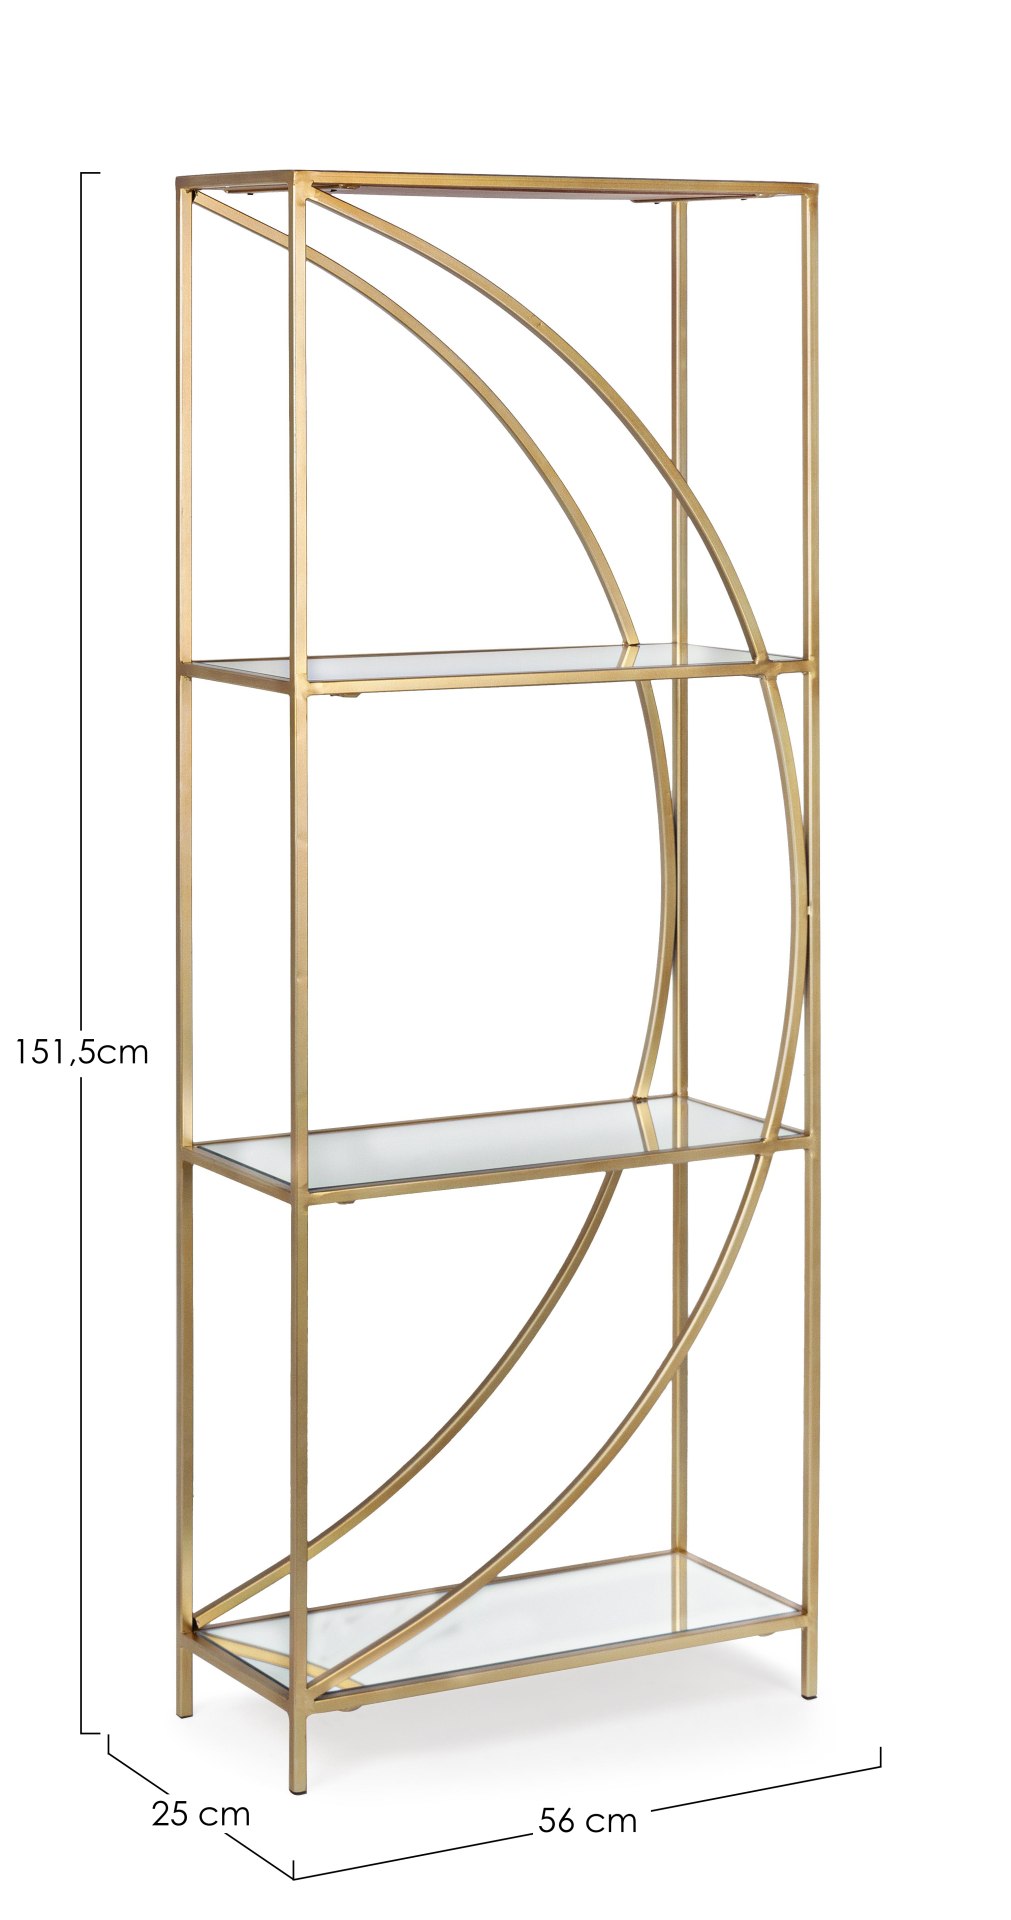 Das Regal Elenor überzeugt mit seinem klassischen Design. Gefertigt wurde es aus Glas. Das Gestell ist aus Metall und hat eine goldene Farbe. Das Regal verfügt über drei Fächer. Die Breite beträgt 56 cm.